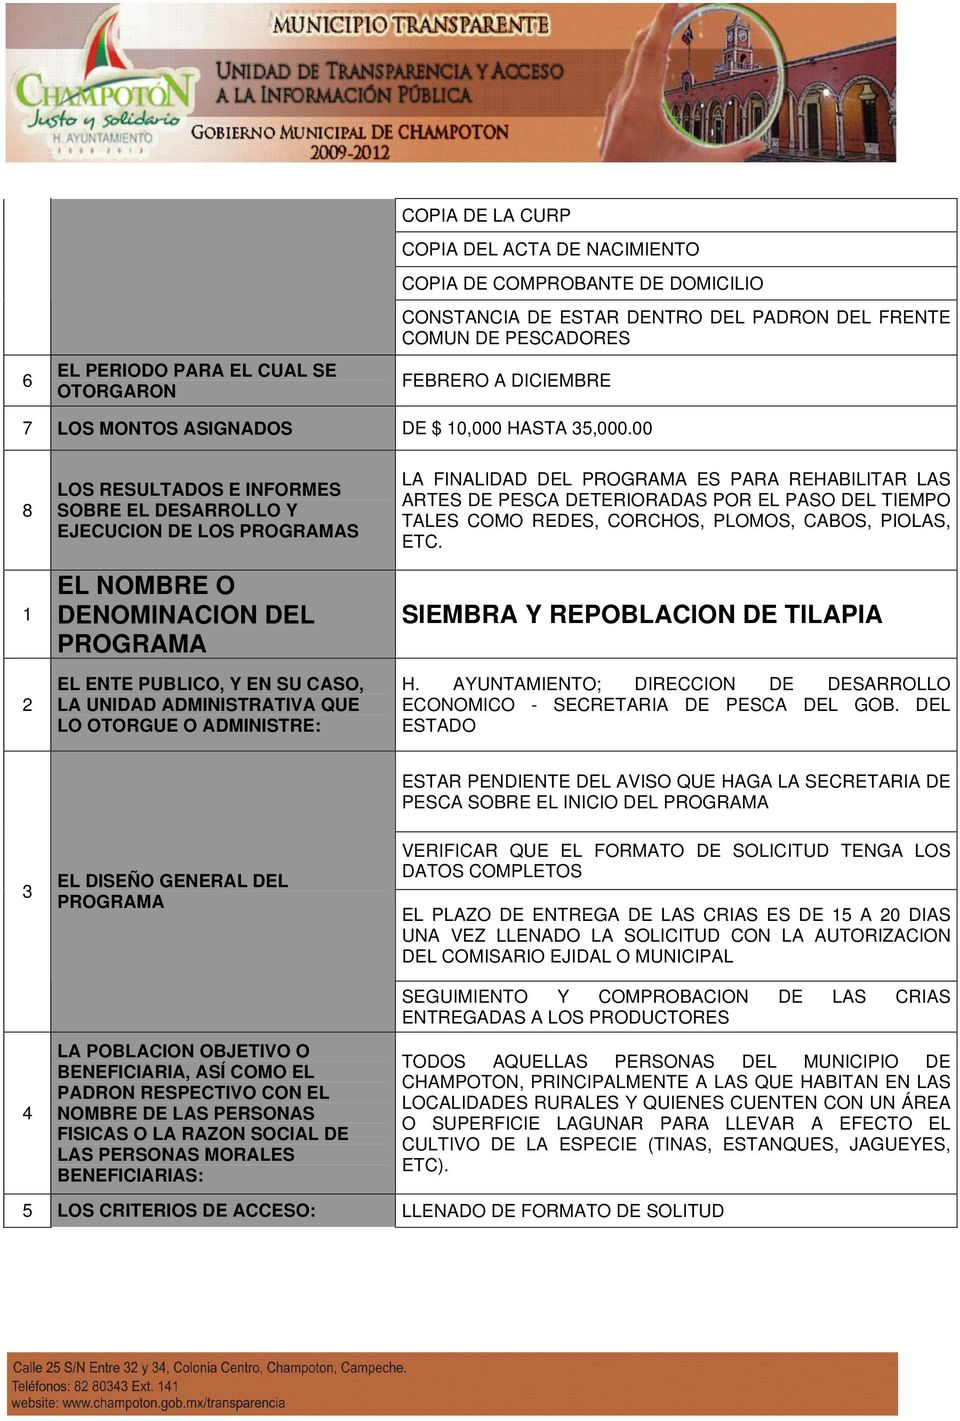 SIEMBRA Y REPOBLACION DE TILAPIA ECONOMICO - SECRETARIA DE PESCA DEL GOB.